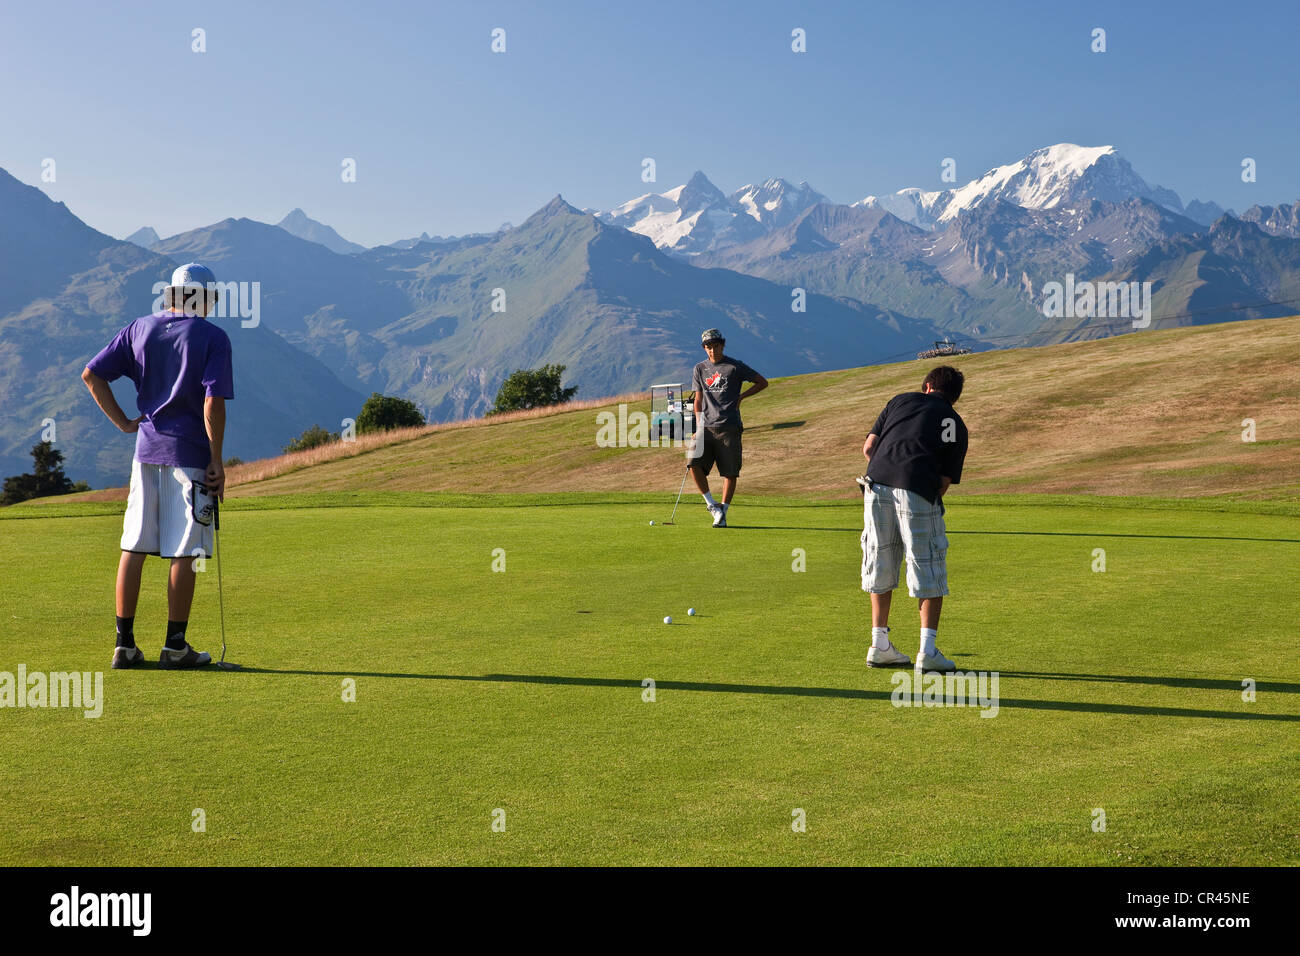 France, Savoie, Les Arcs 1800, the golf course facing Mont Blanc (4810m) Stock Photo